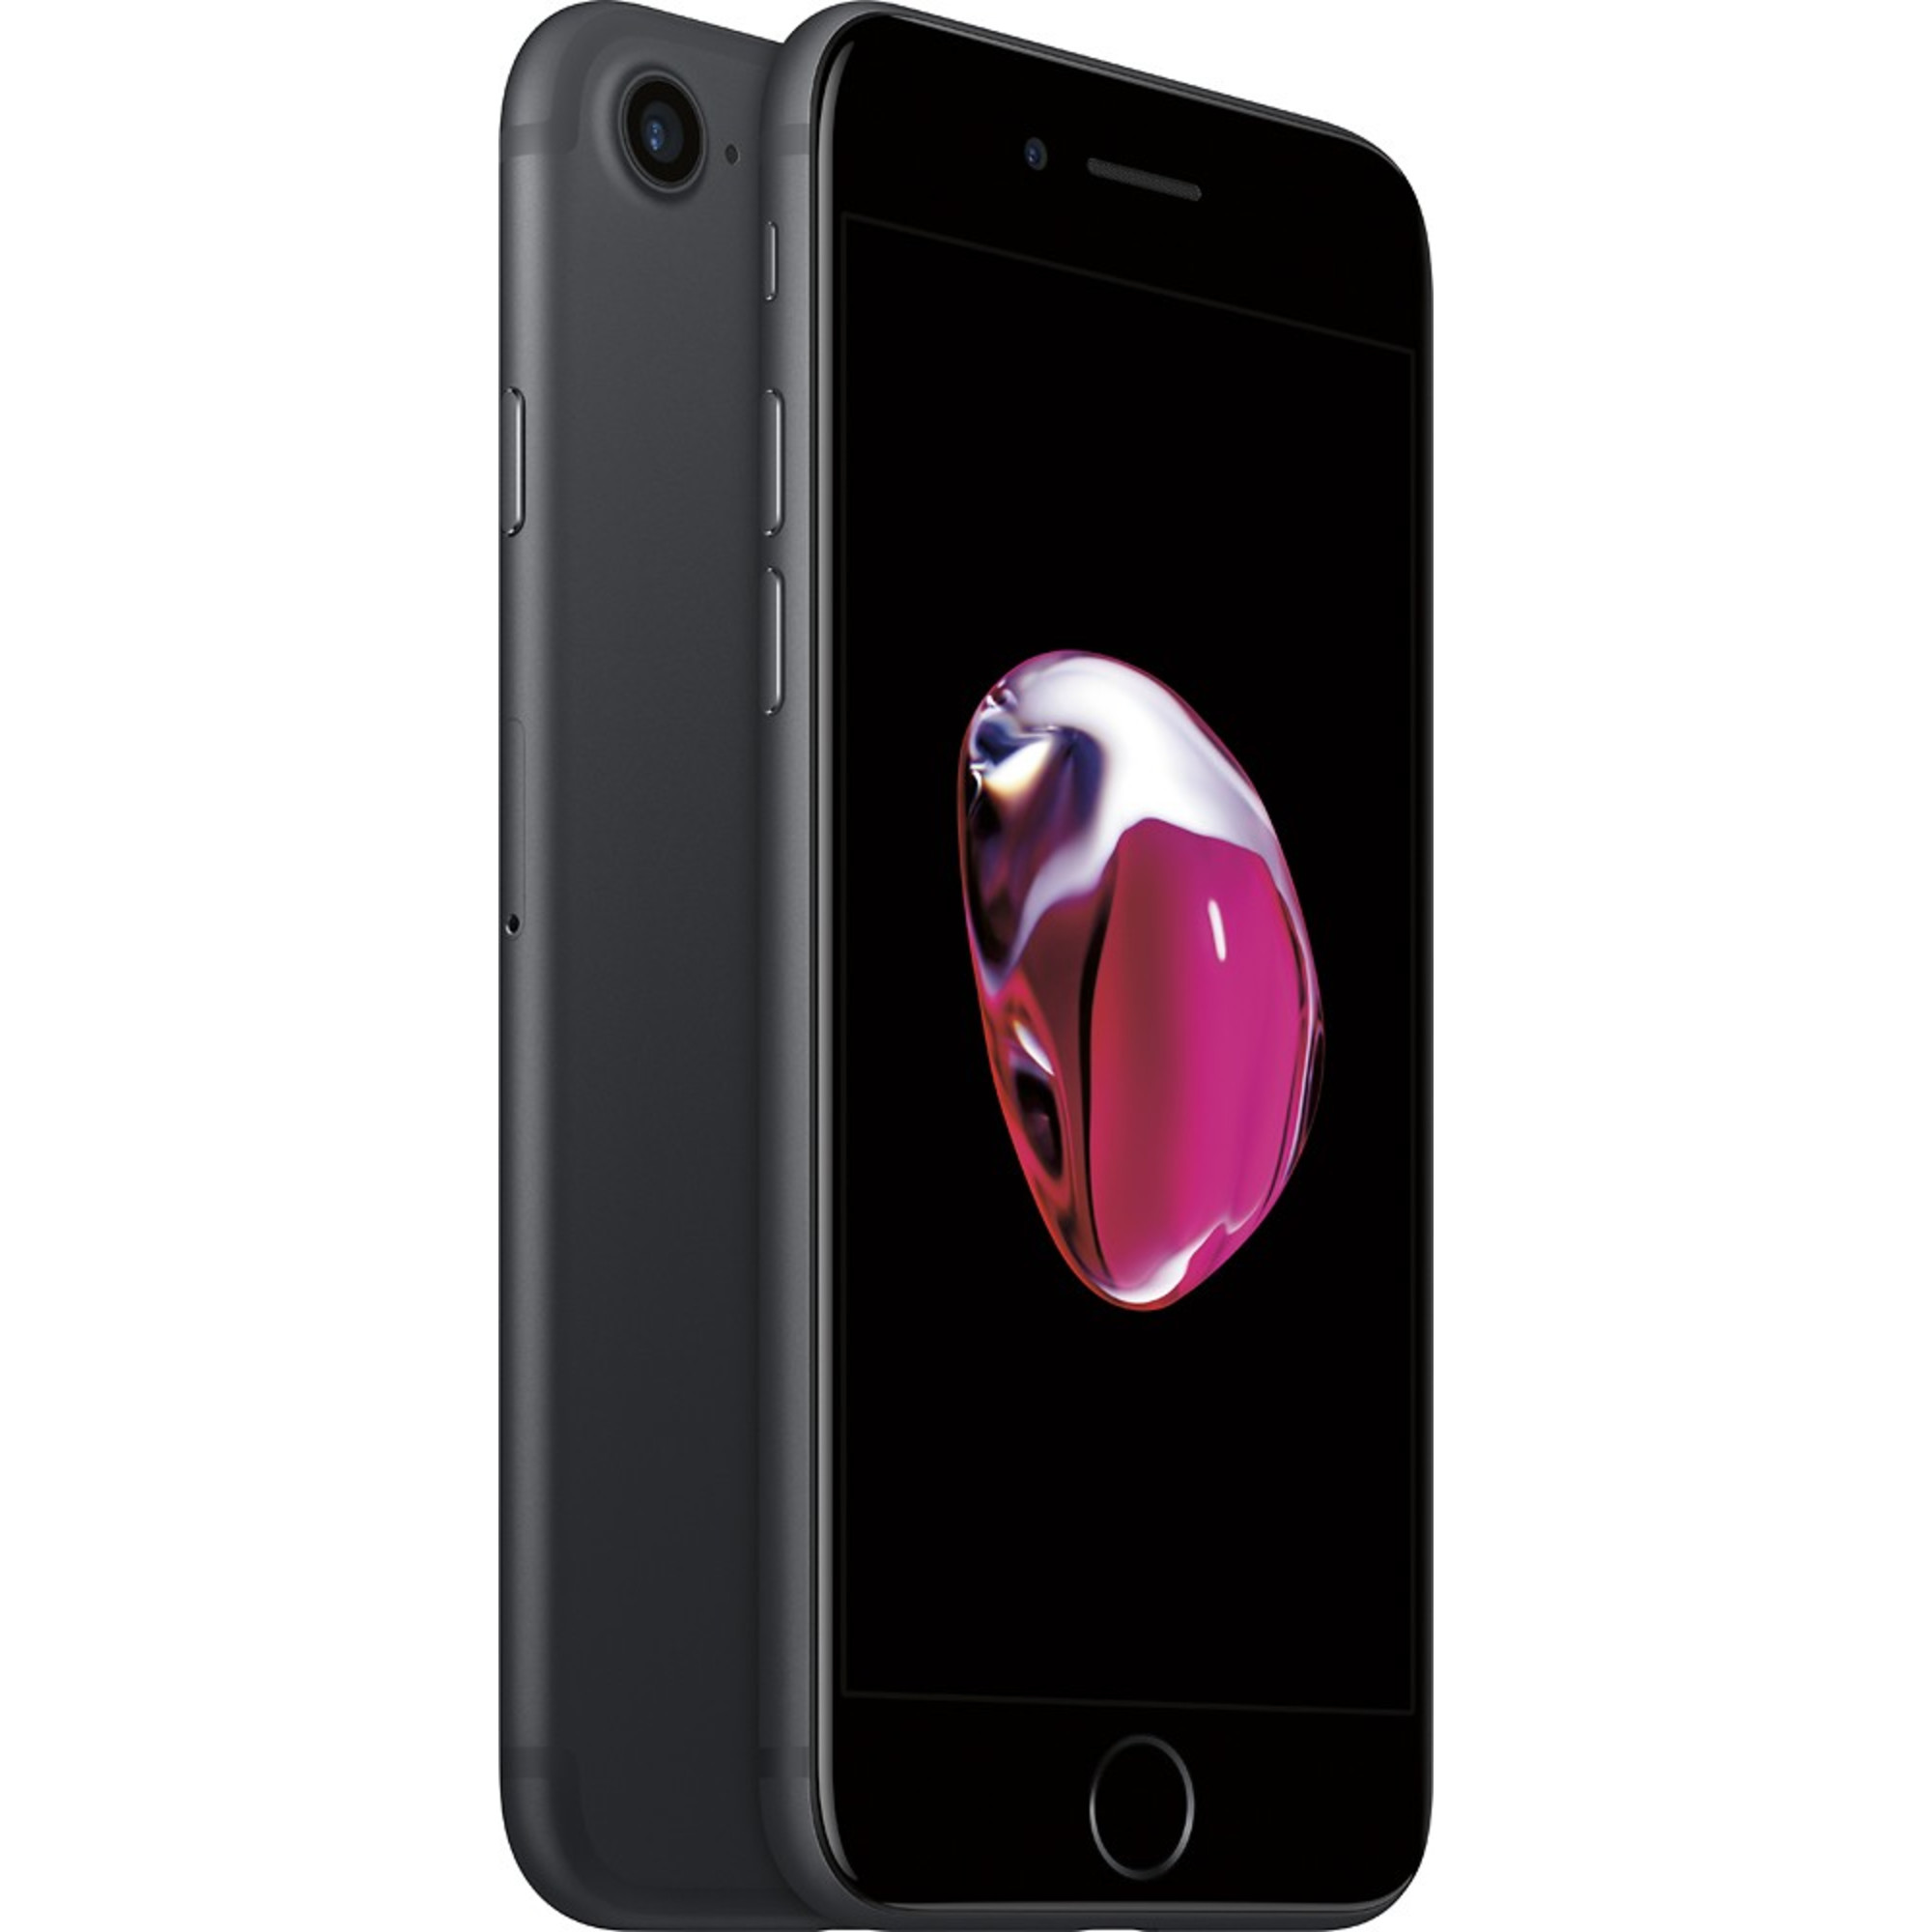 Apple iPhone 7 32GB Fully Unlocked (Verizon + Sprint + GSM Unlocked) - Black (Used) - image 2 of 3